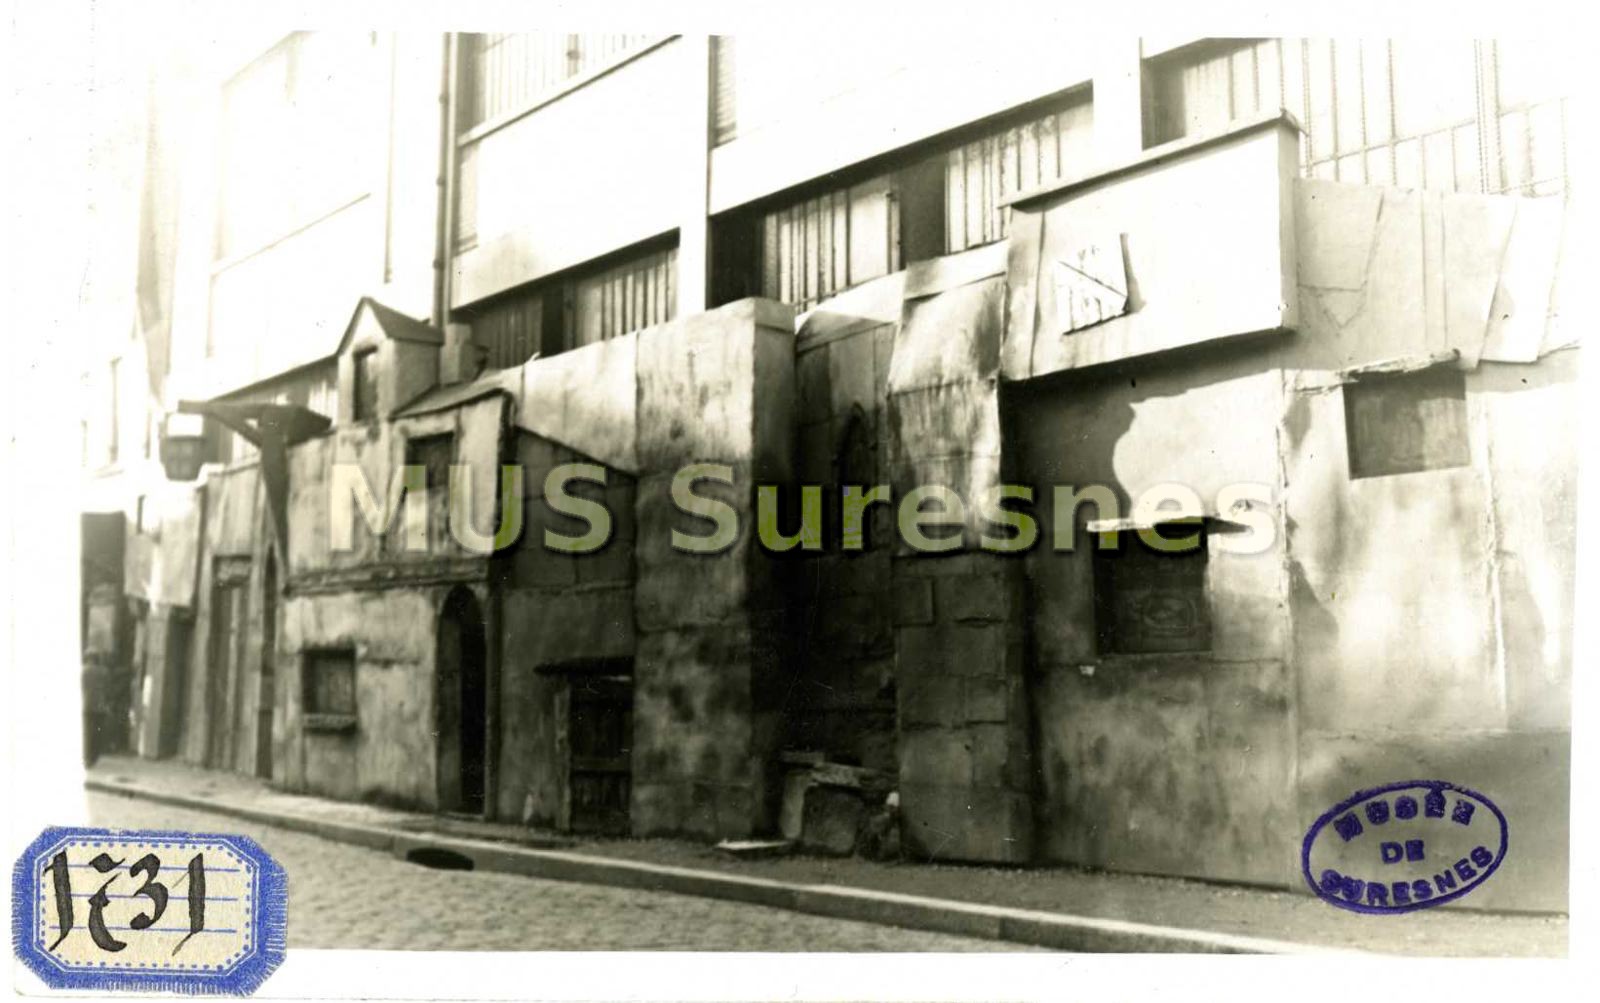 Le vieux Suresnes , rue du pont : reconstitution